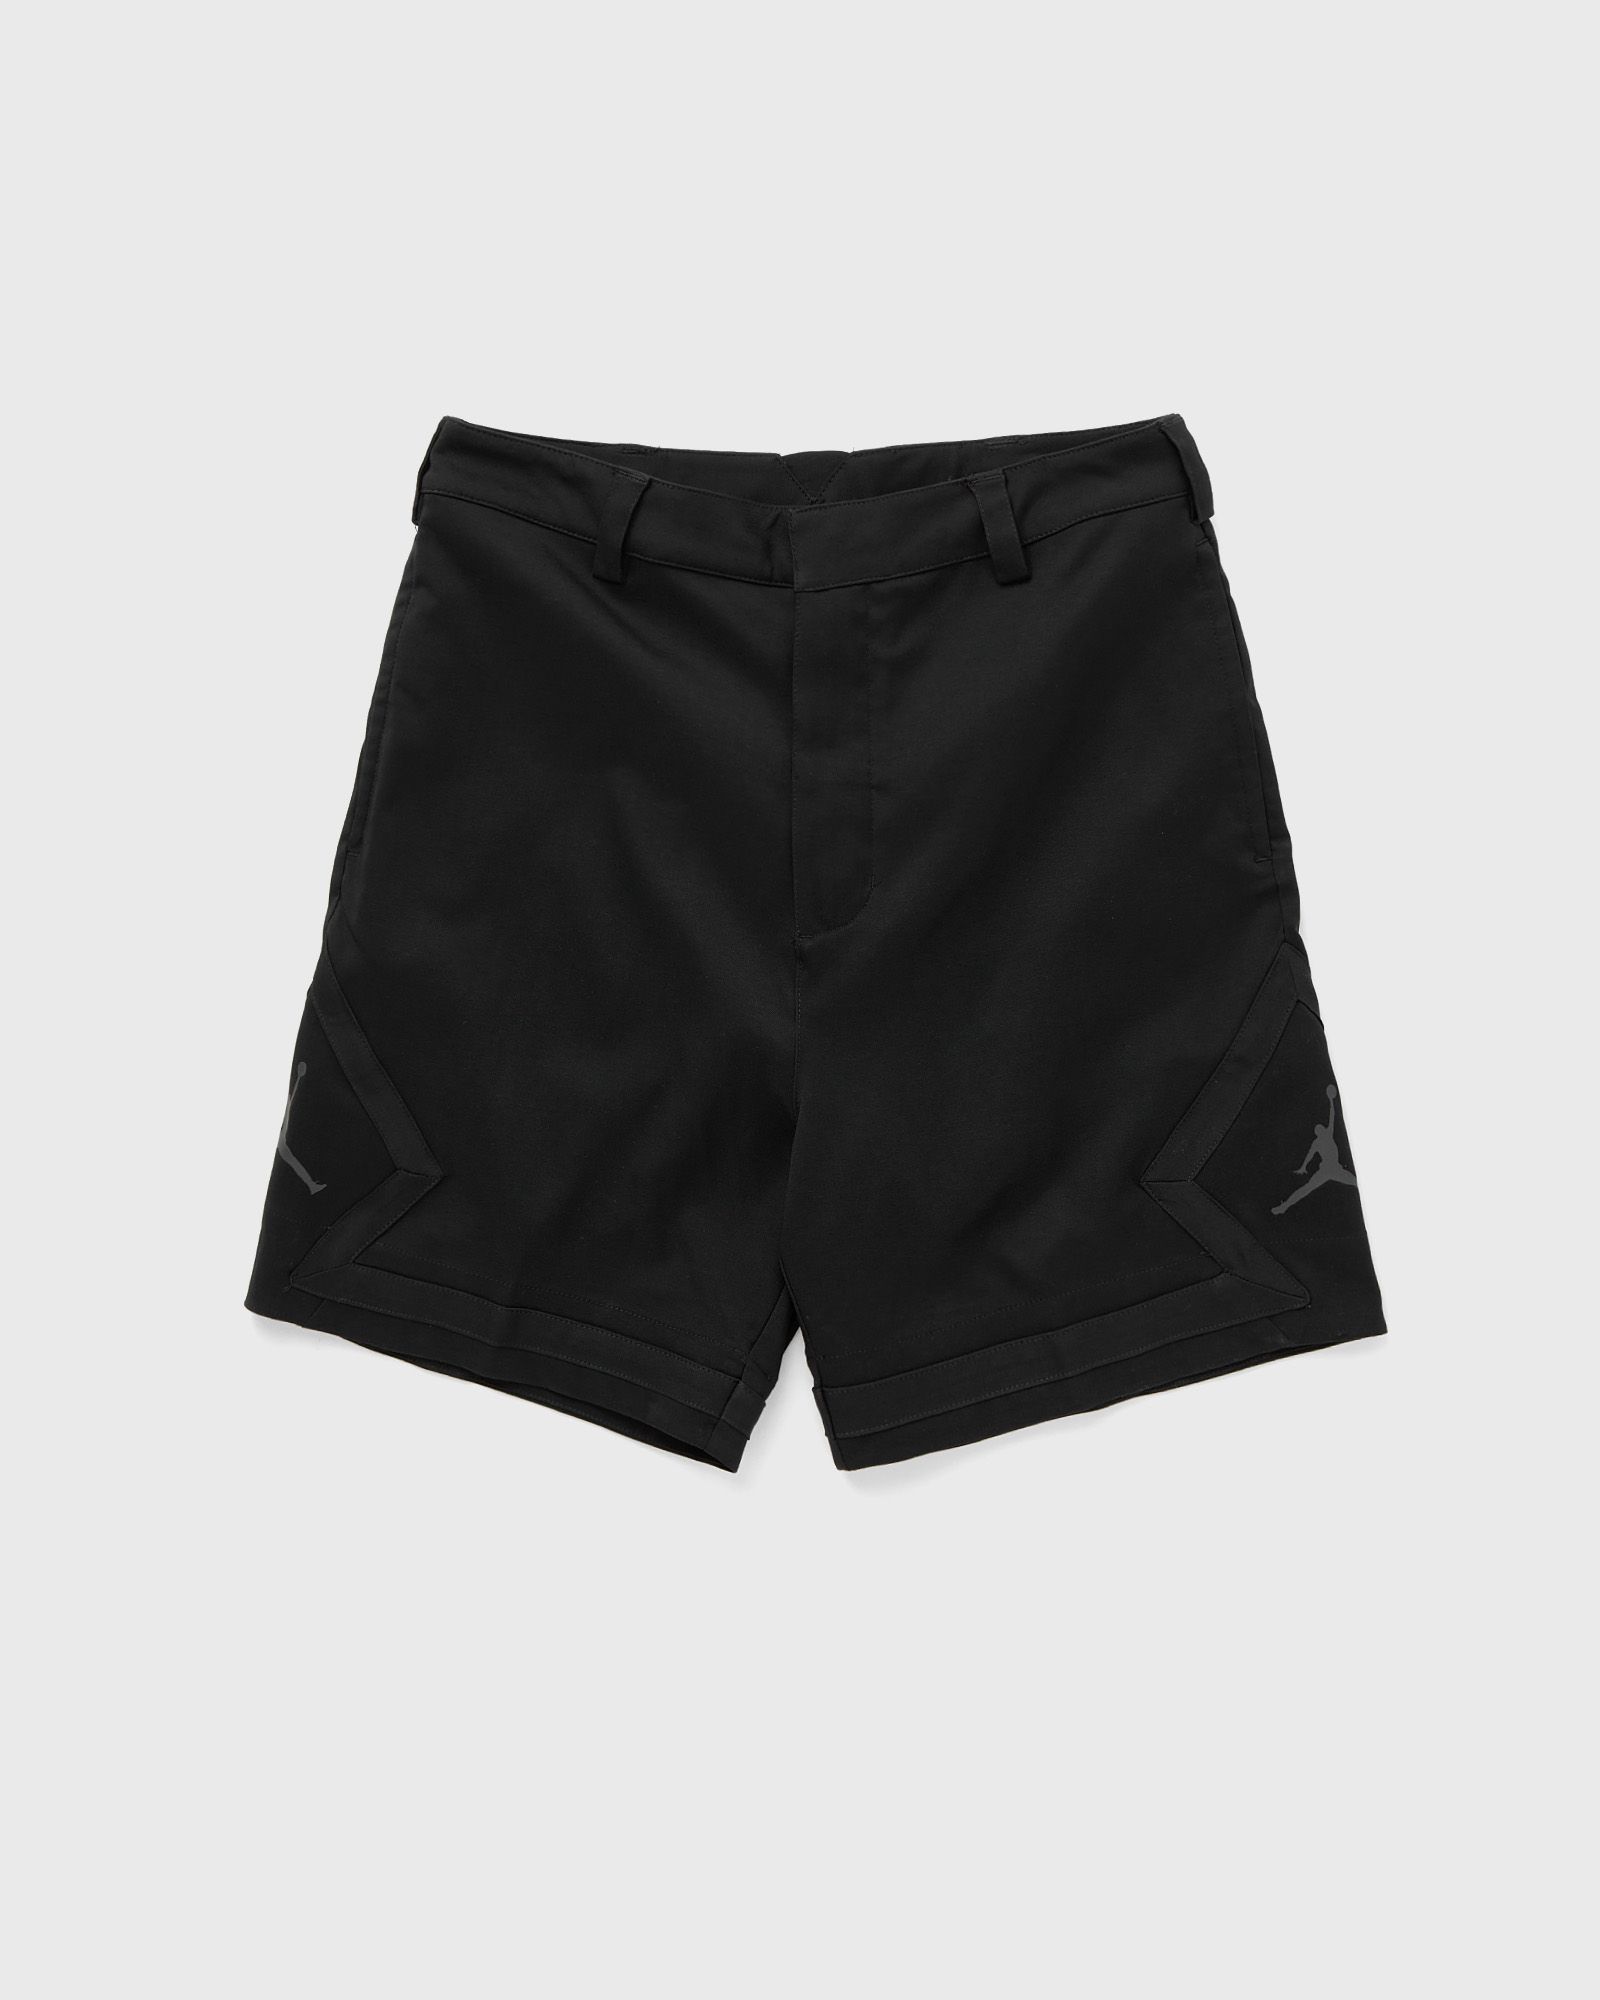 Jordan - dri-fit sport golf diamond shorts men sport & team shorts black in größe:l